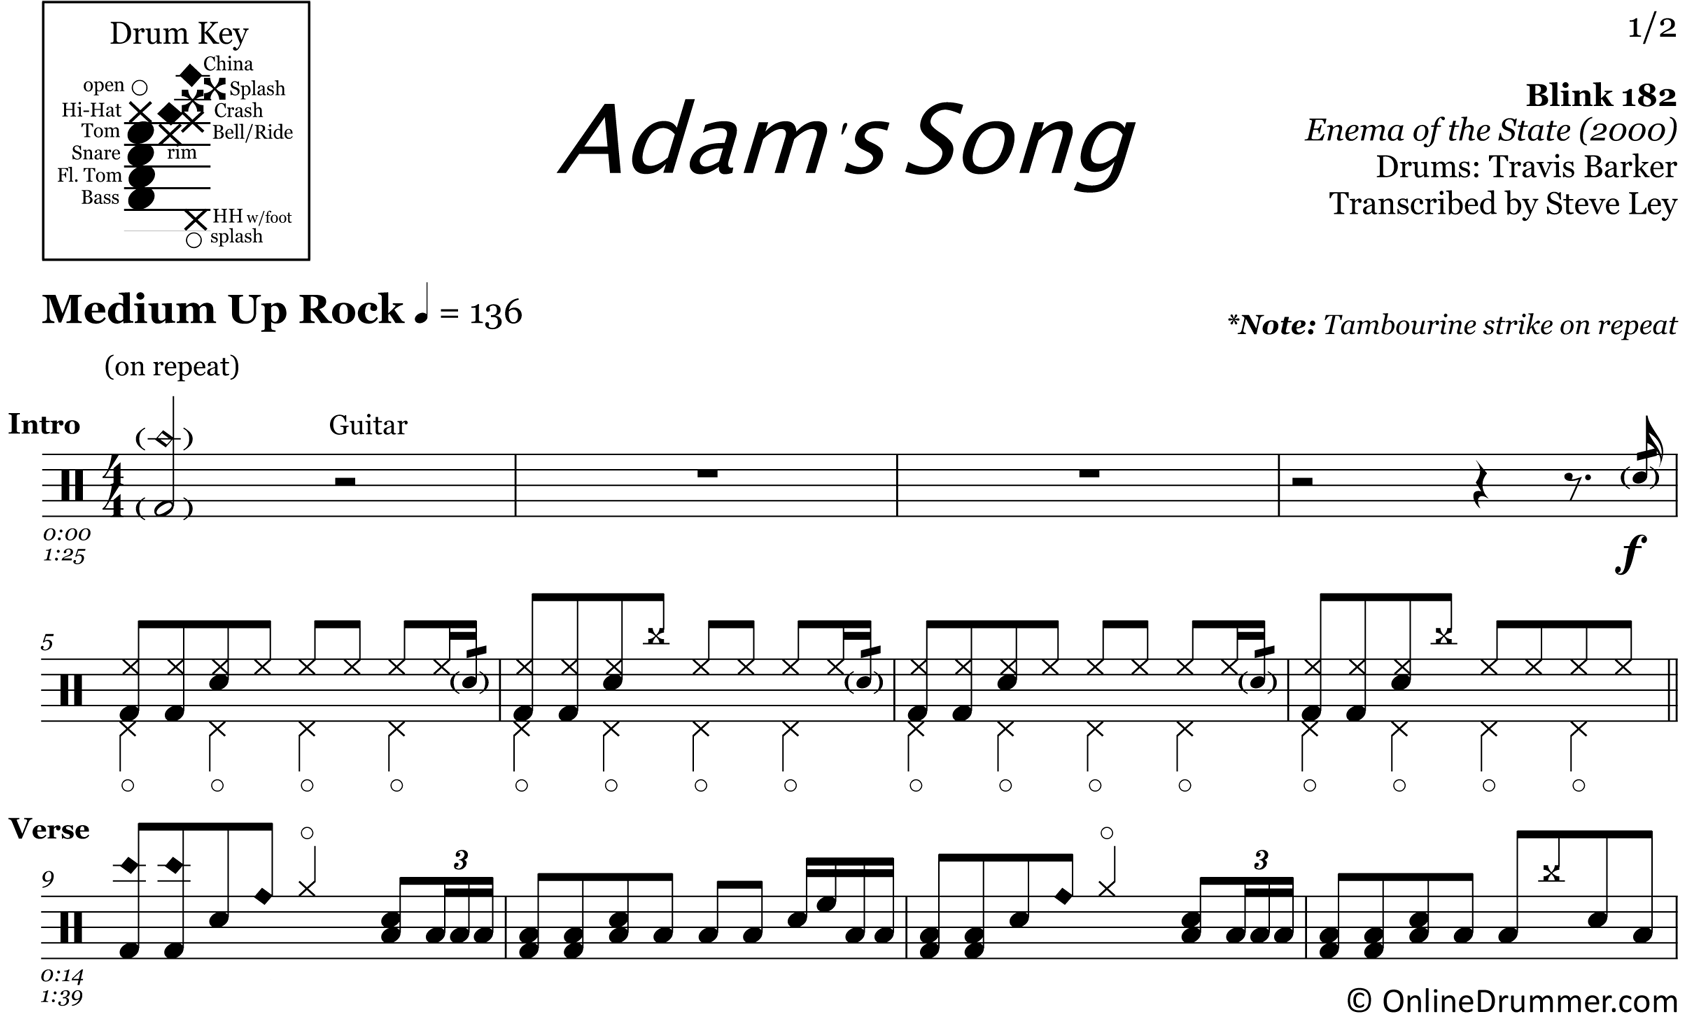 Adam's Song - Blink 182 - Drum Sheet Music